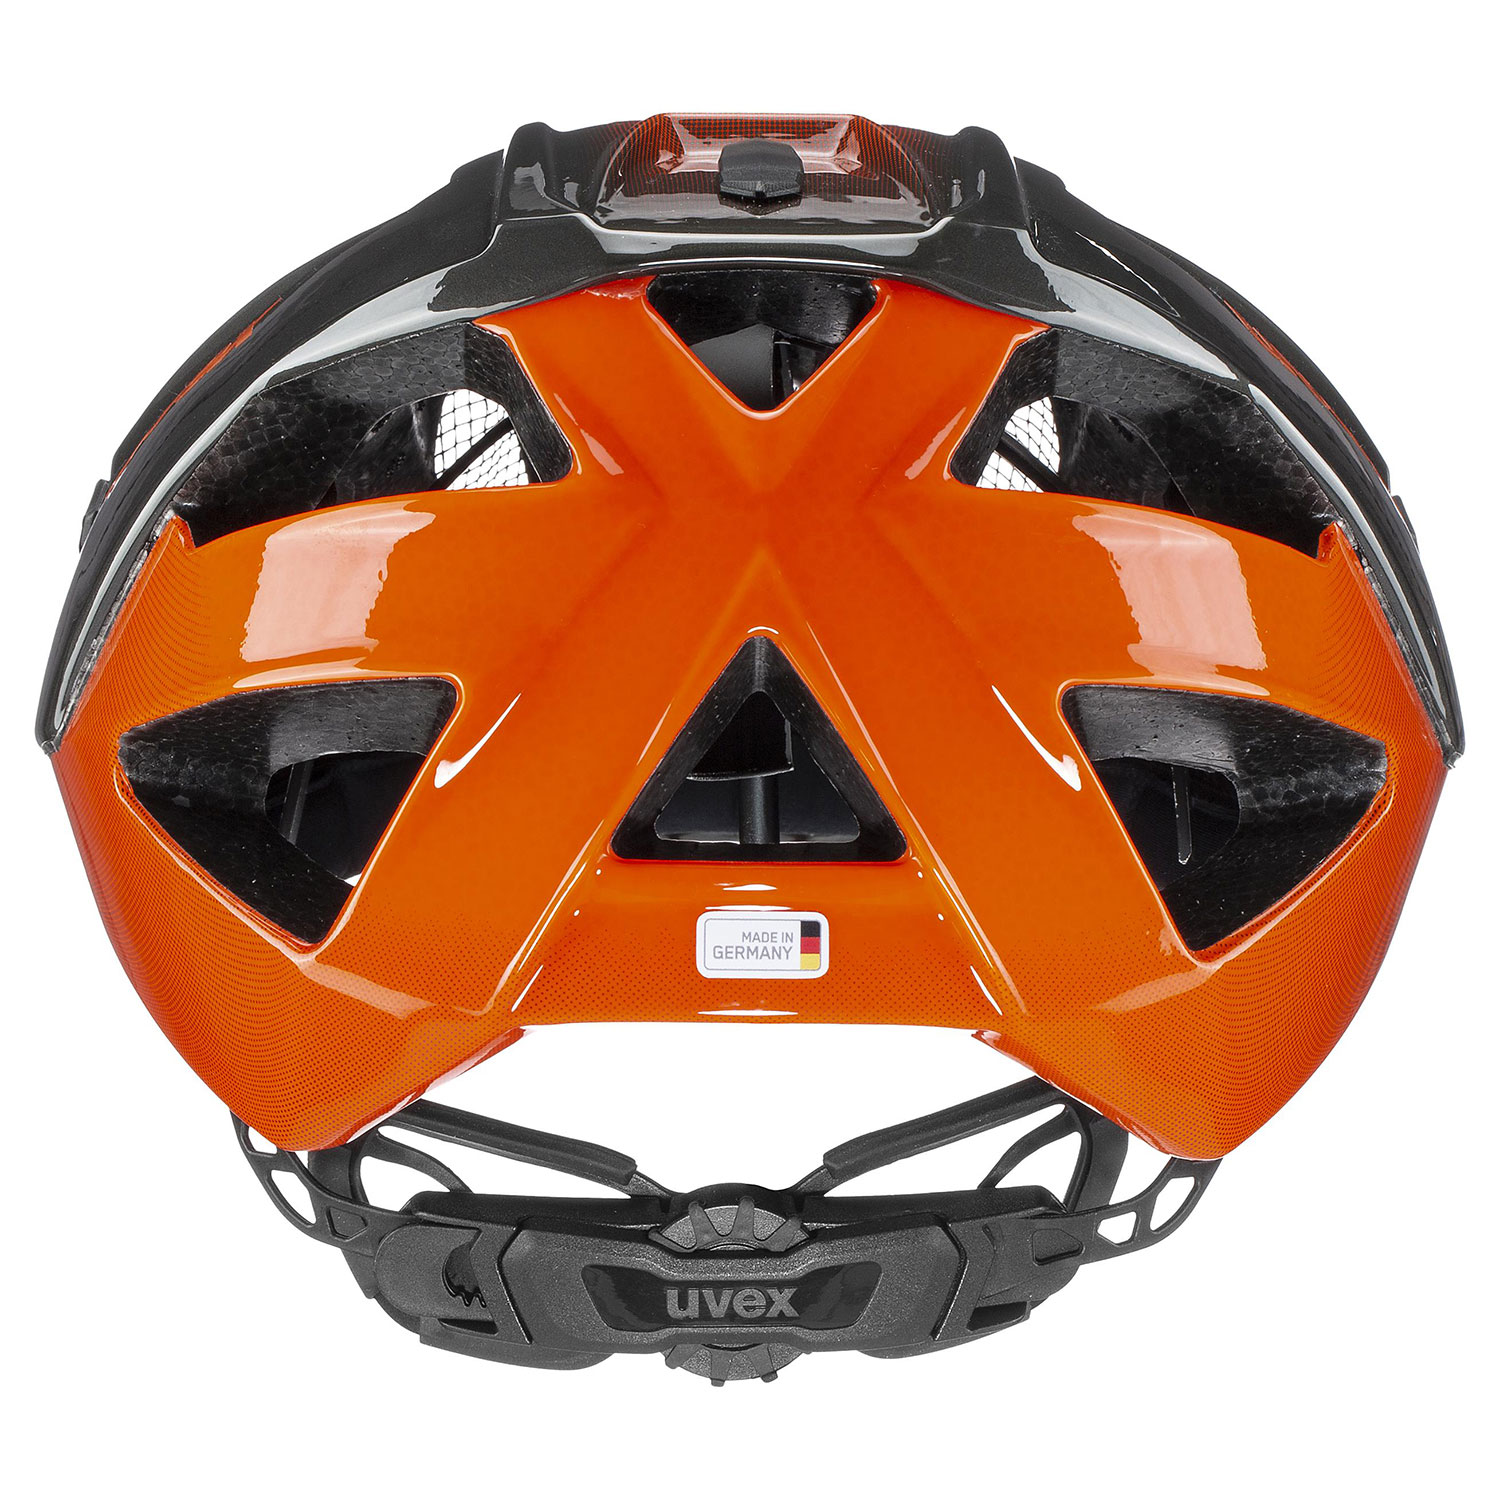 UVEX Quatro Titan - Orange (s4107752800)